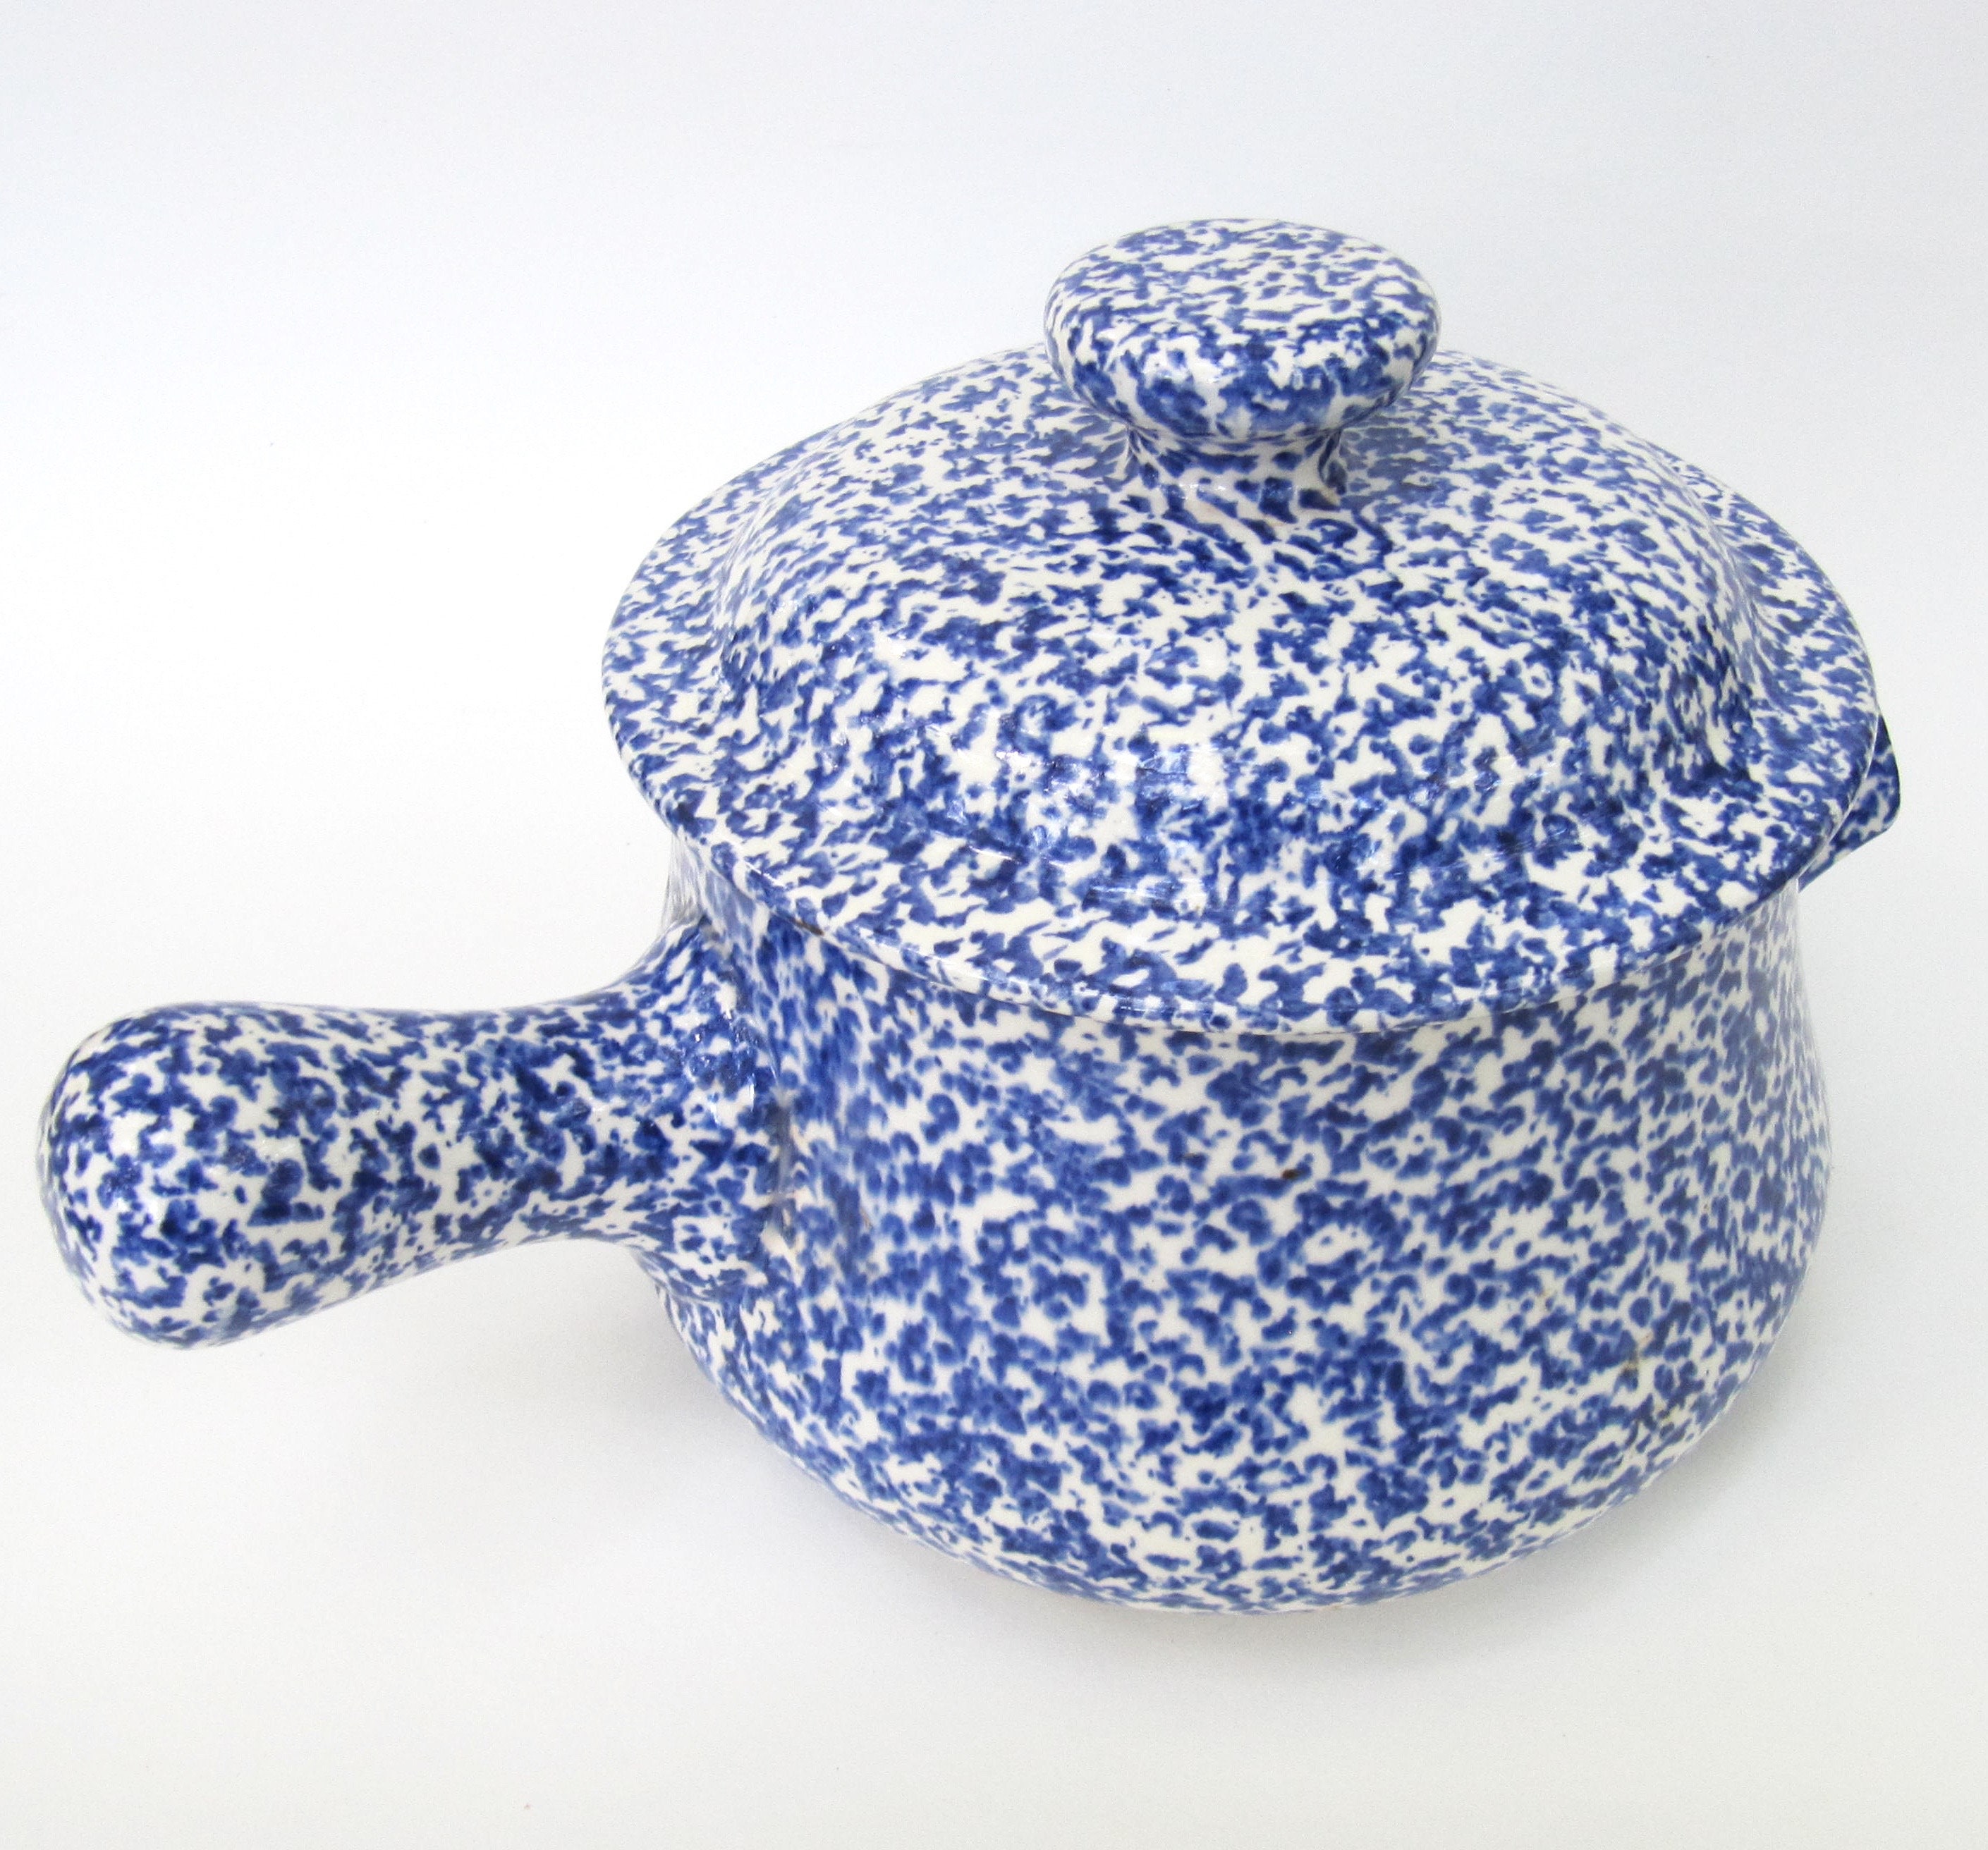 USA Pottery Splatterware Spongeware Blue White Bean Pot avec